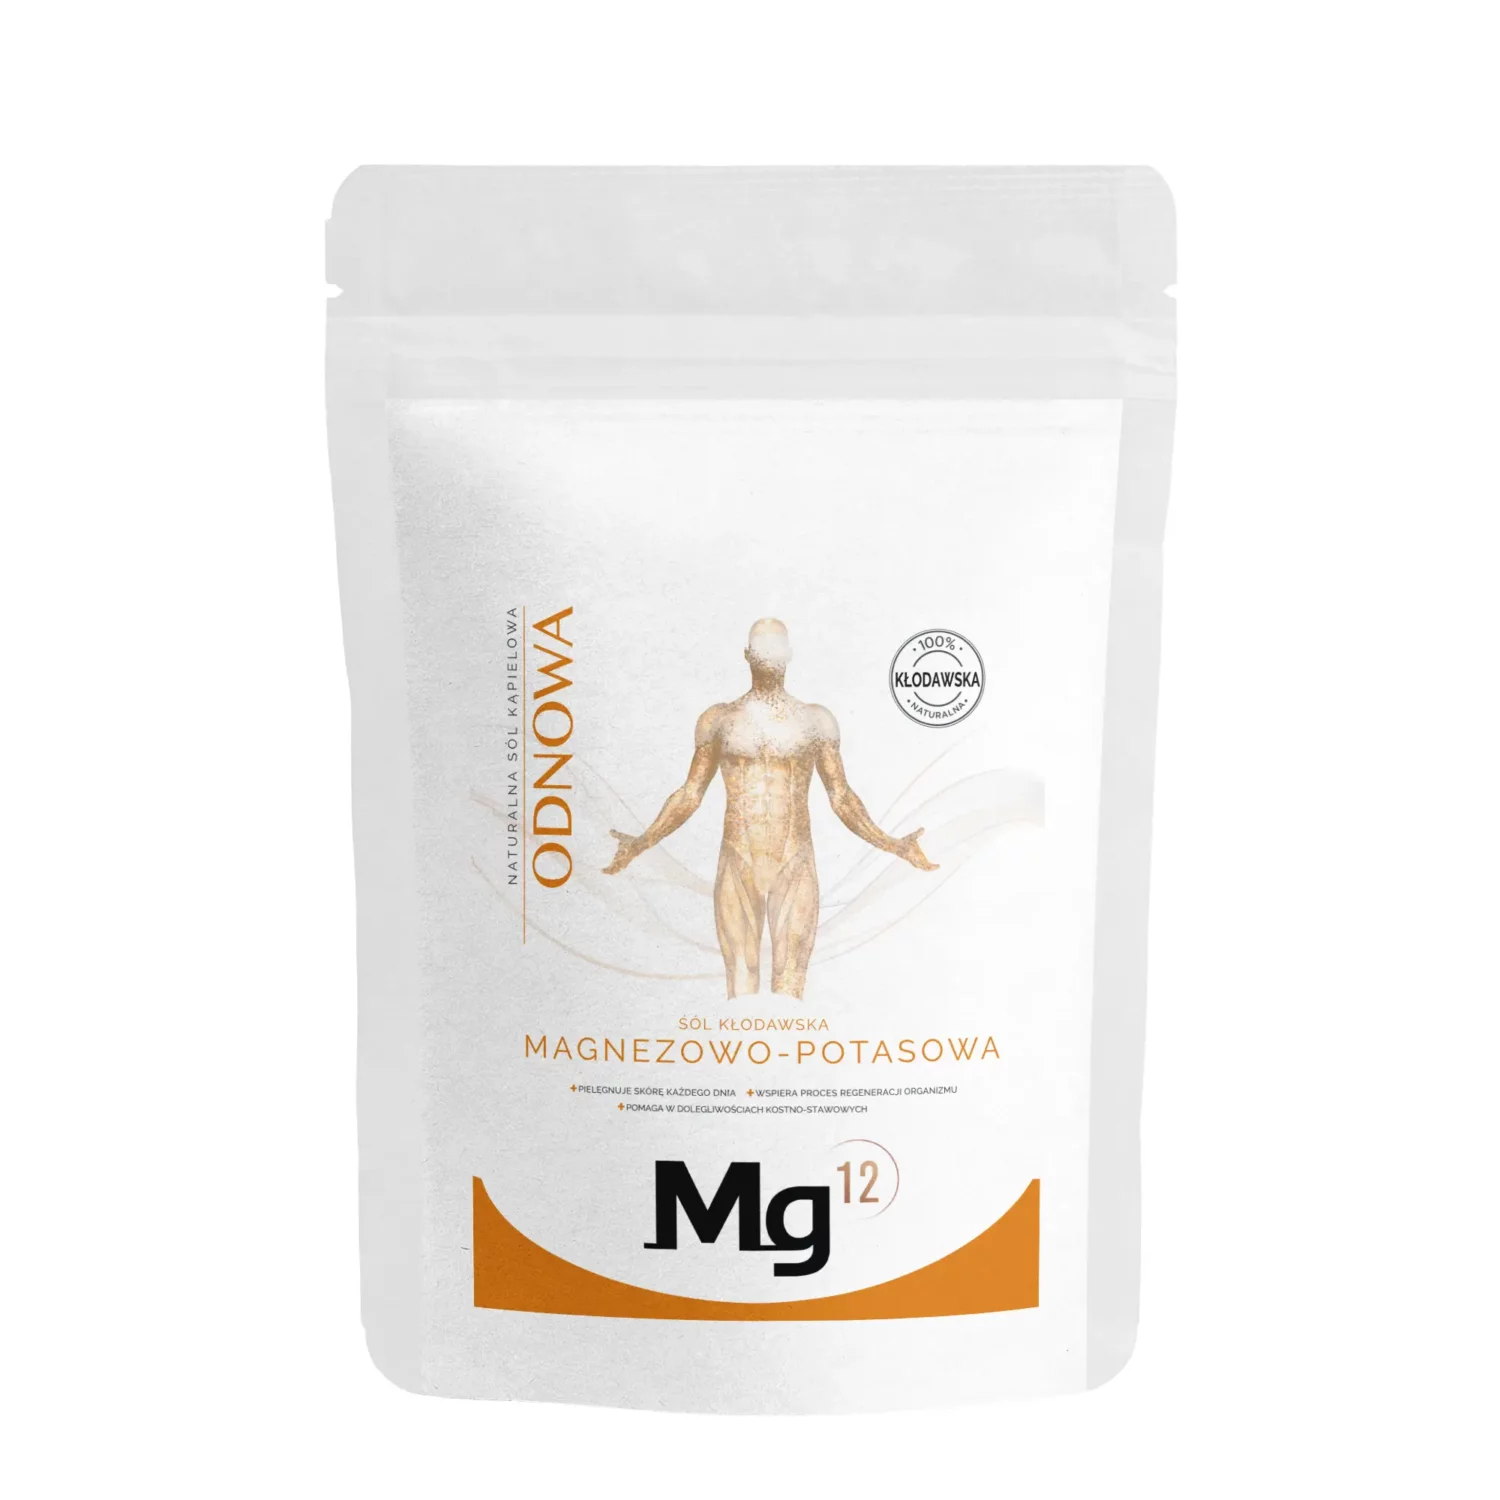 mg12 odnowa sól kłodawska magnezowo-potasowa 4kg